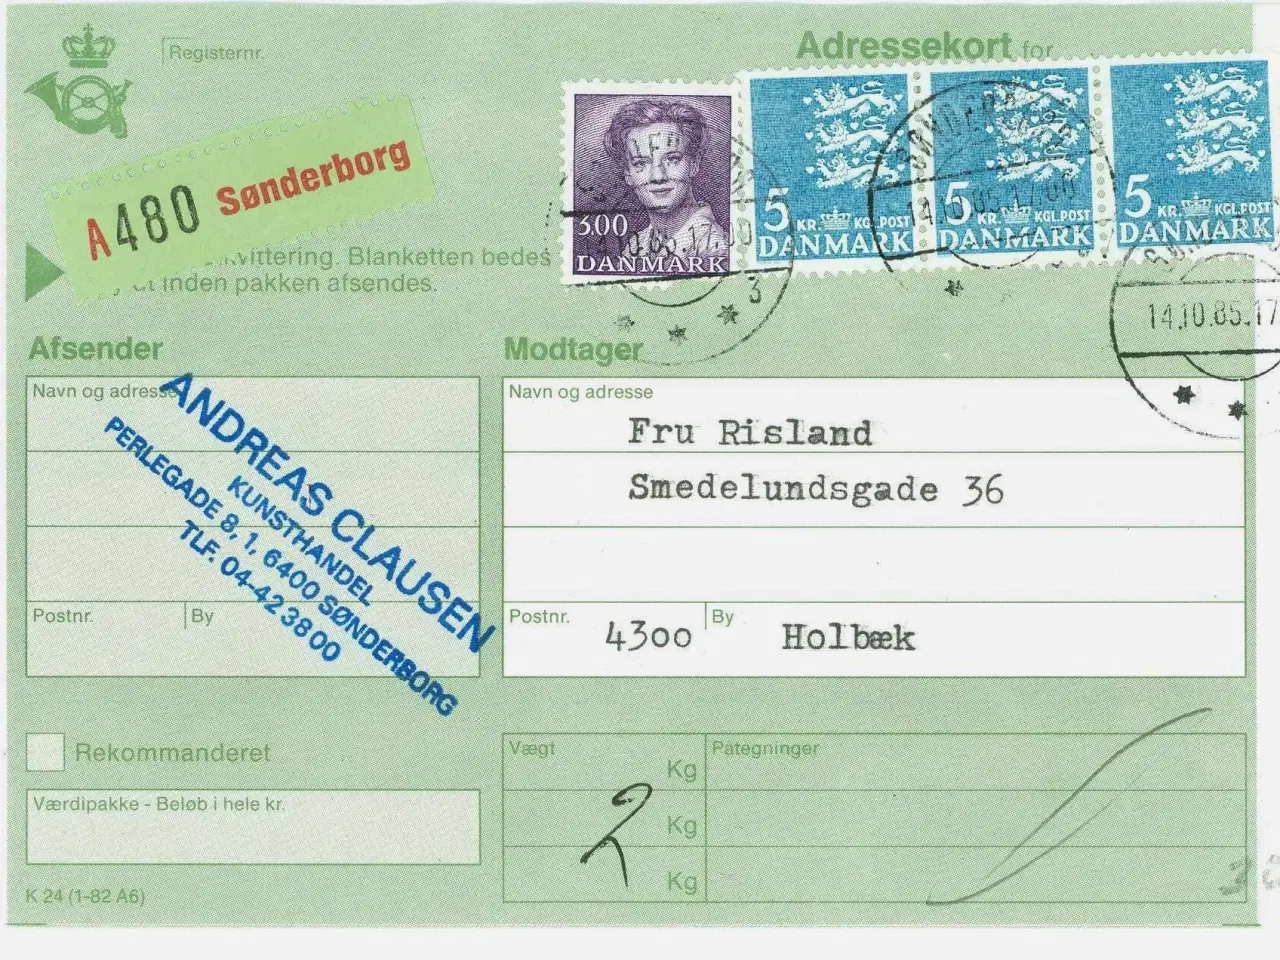 Billede 1 - Adressekort. Sønderborg 1985